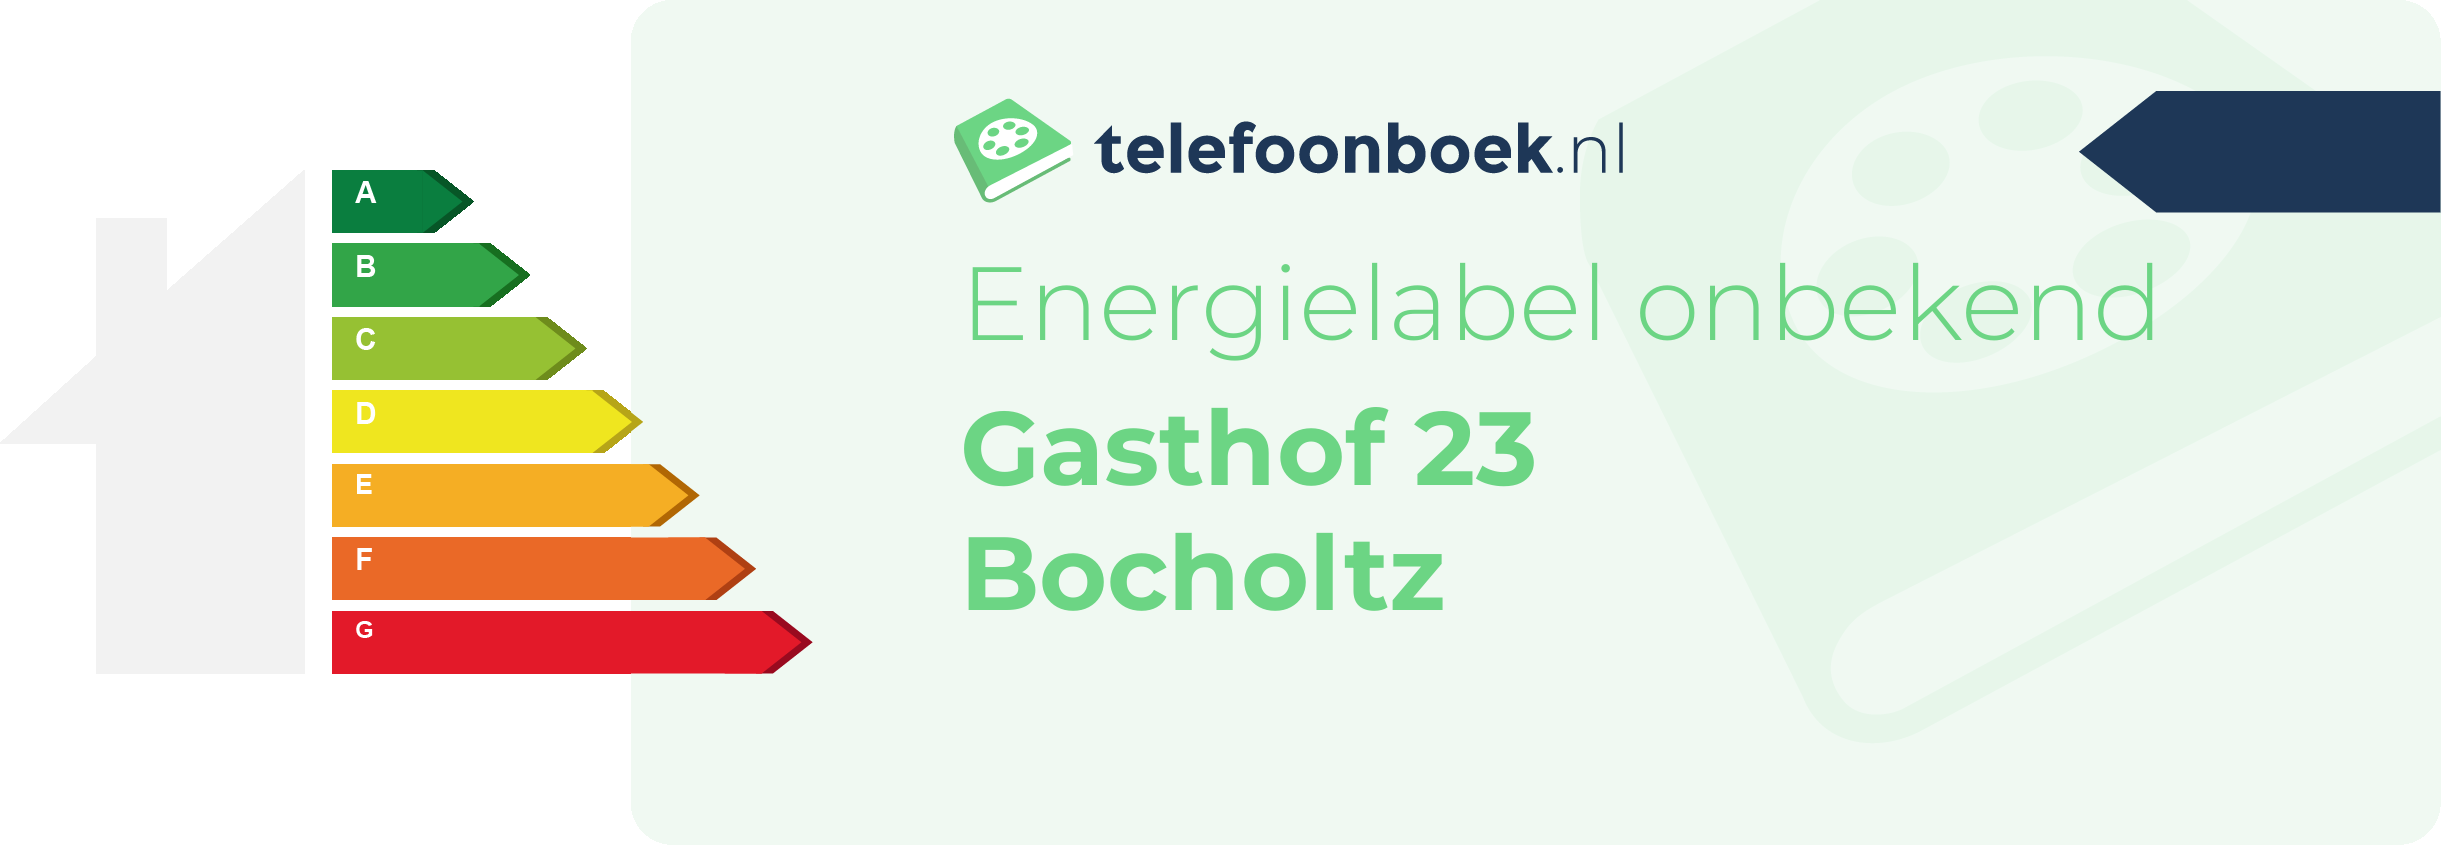 Energielabel Gasthof 23 Bocholtz